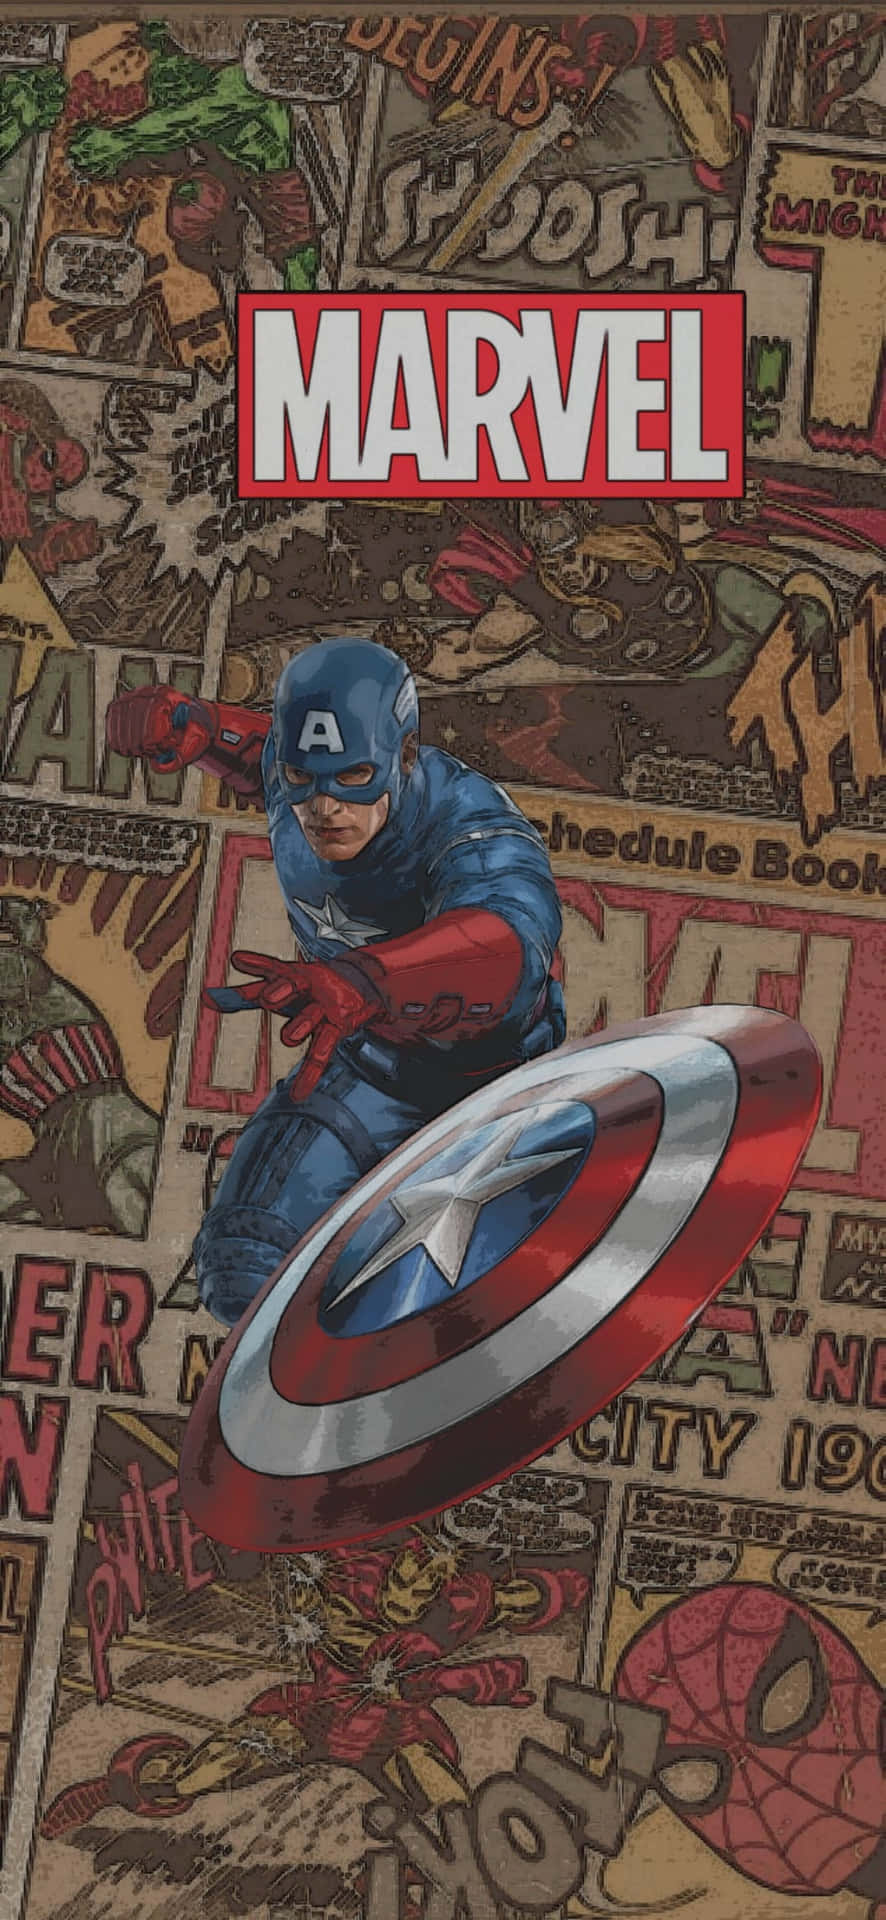 Captain America er en Marvel-superhelt, der har kæmpet for retfærdighed siden Anden Verdenskrig. Wallpaper